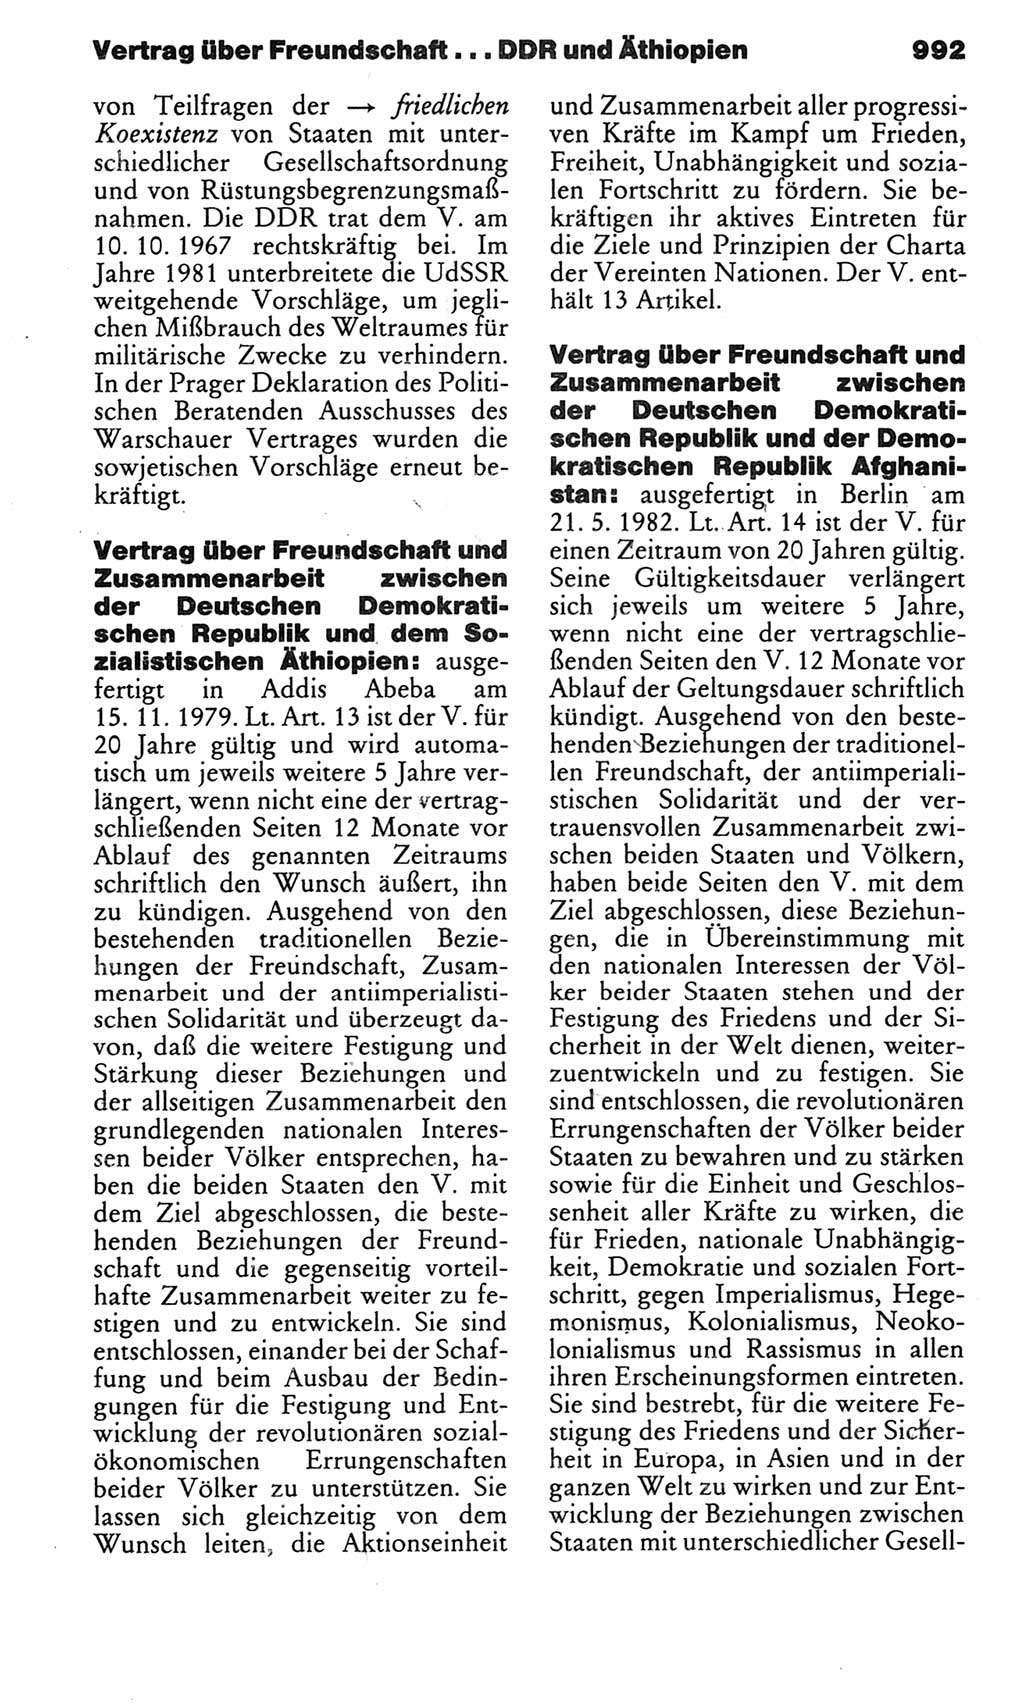 Kleines politisches Wörterbuch [Deutsche Demokratische Republik (DDR)] 1983, Seite 992 (Kl. pol. Wb. DDR 1983, S. 992)